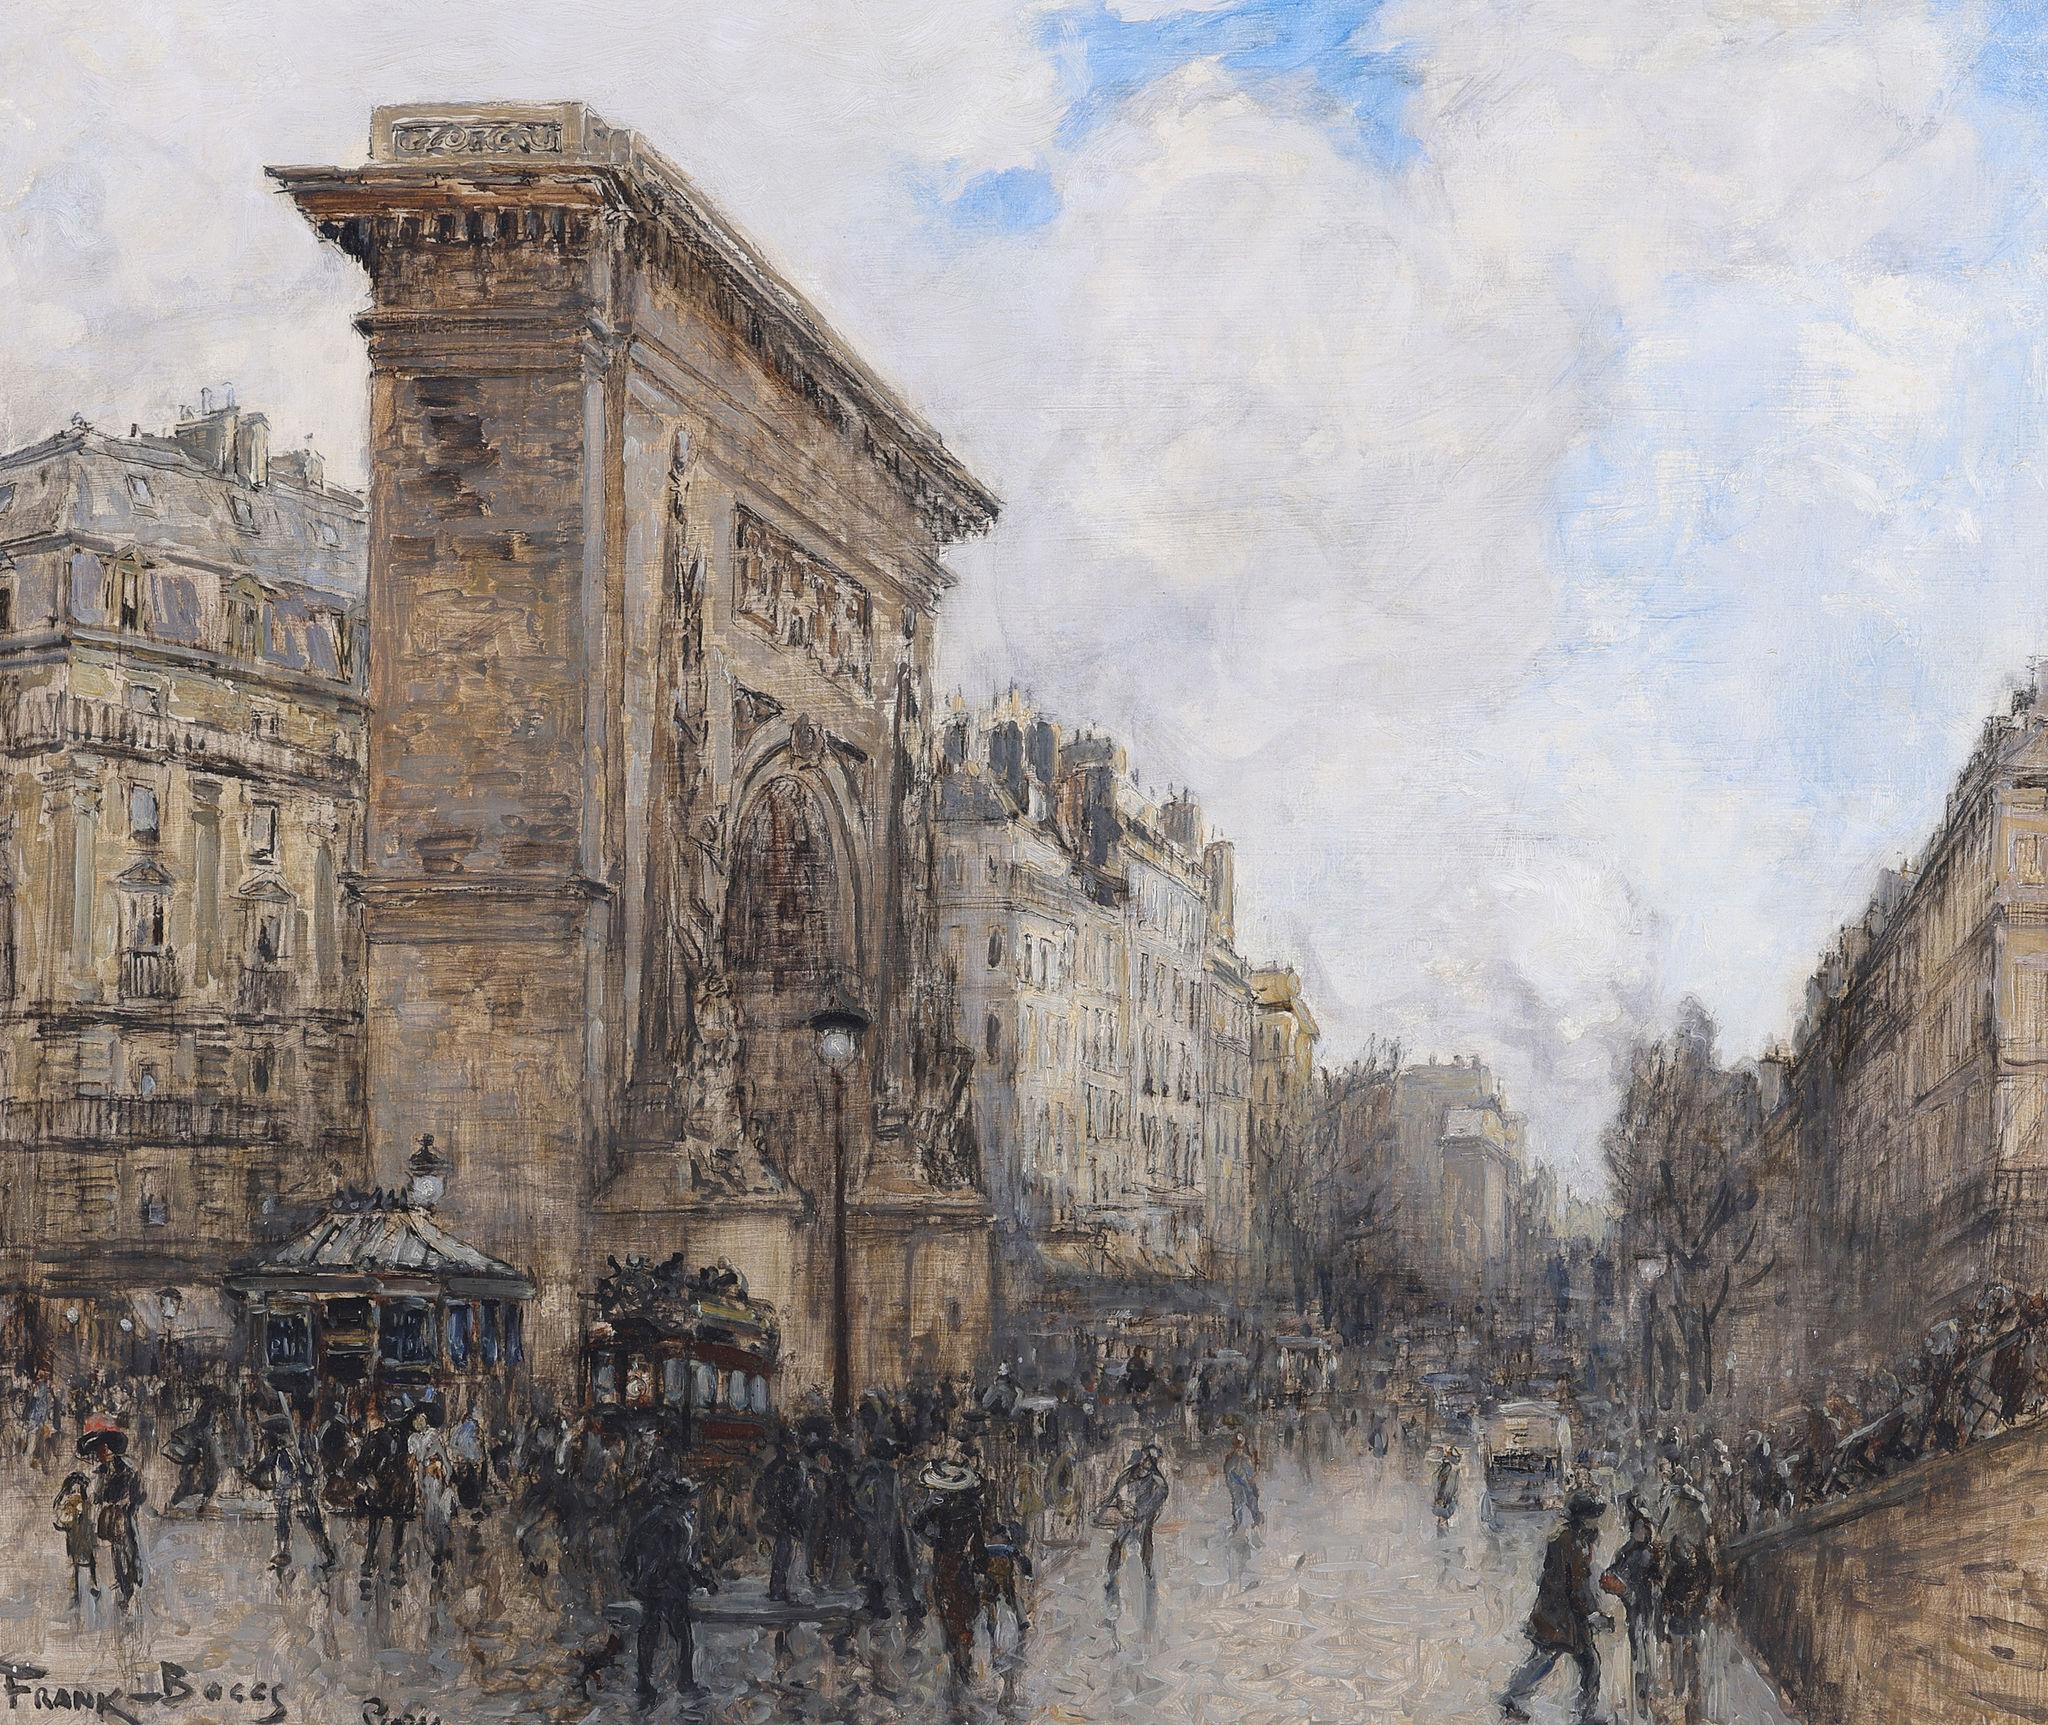 Porte St Denis, Paris - Scène parisienne - Painting de Frank Meyers-Boggs